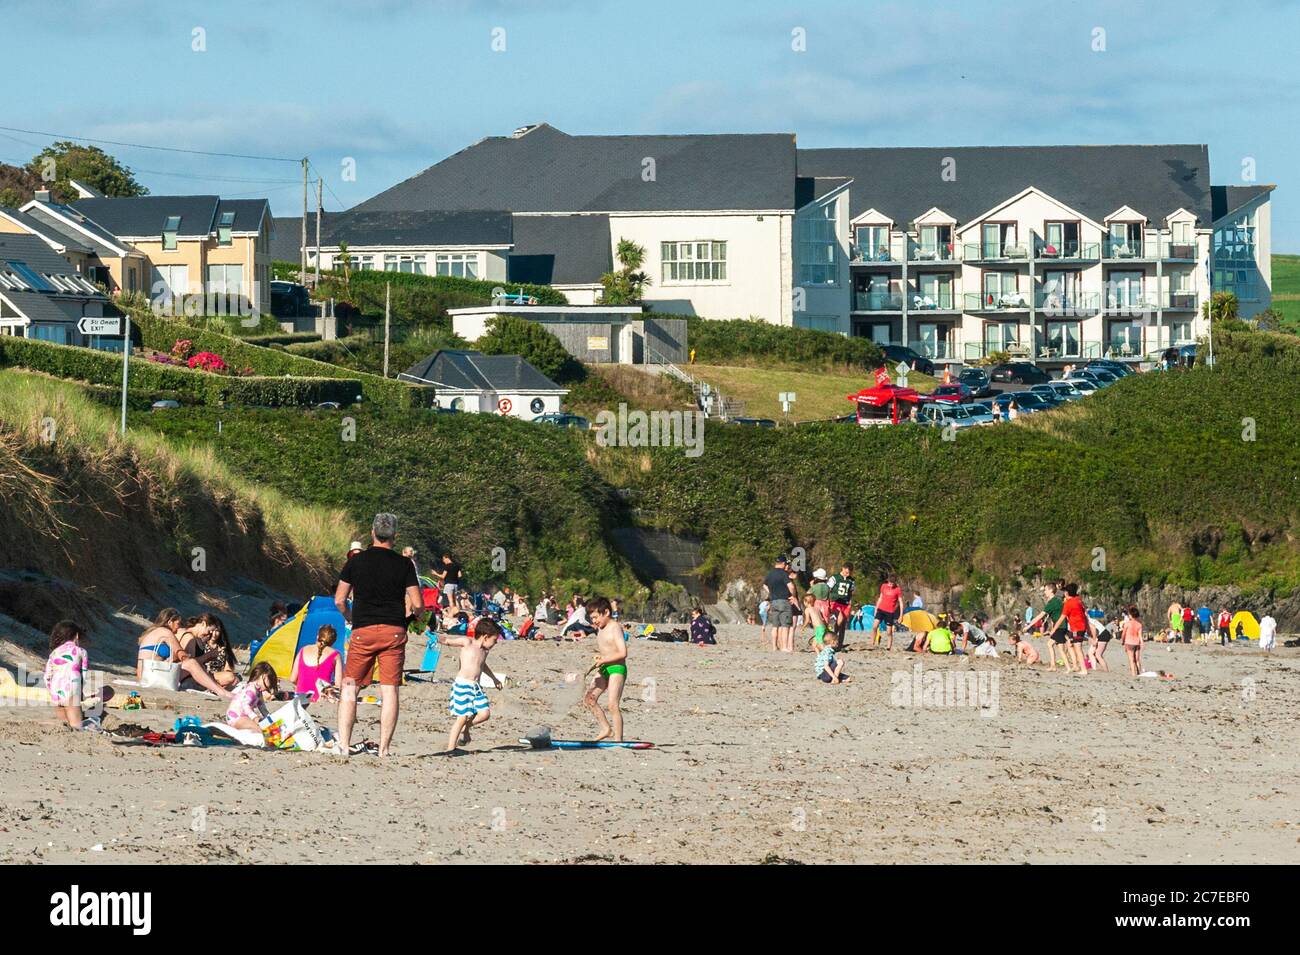 Inchydoney, West Cork, Irlande. 16 juillet 2020. Inchydoney était une ruche d'activité ce soir, car de nombreux habitants et touristes sont descendus sur la plage pour profiter au maximum du bon temps. Crédit : AG News/Alay Live News Banque D'Images